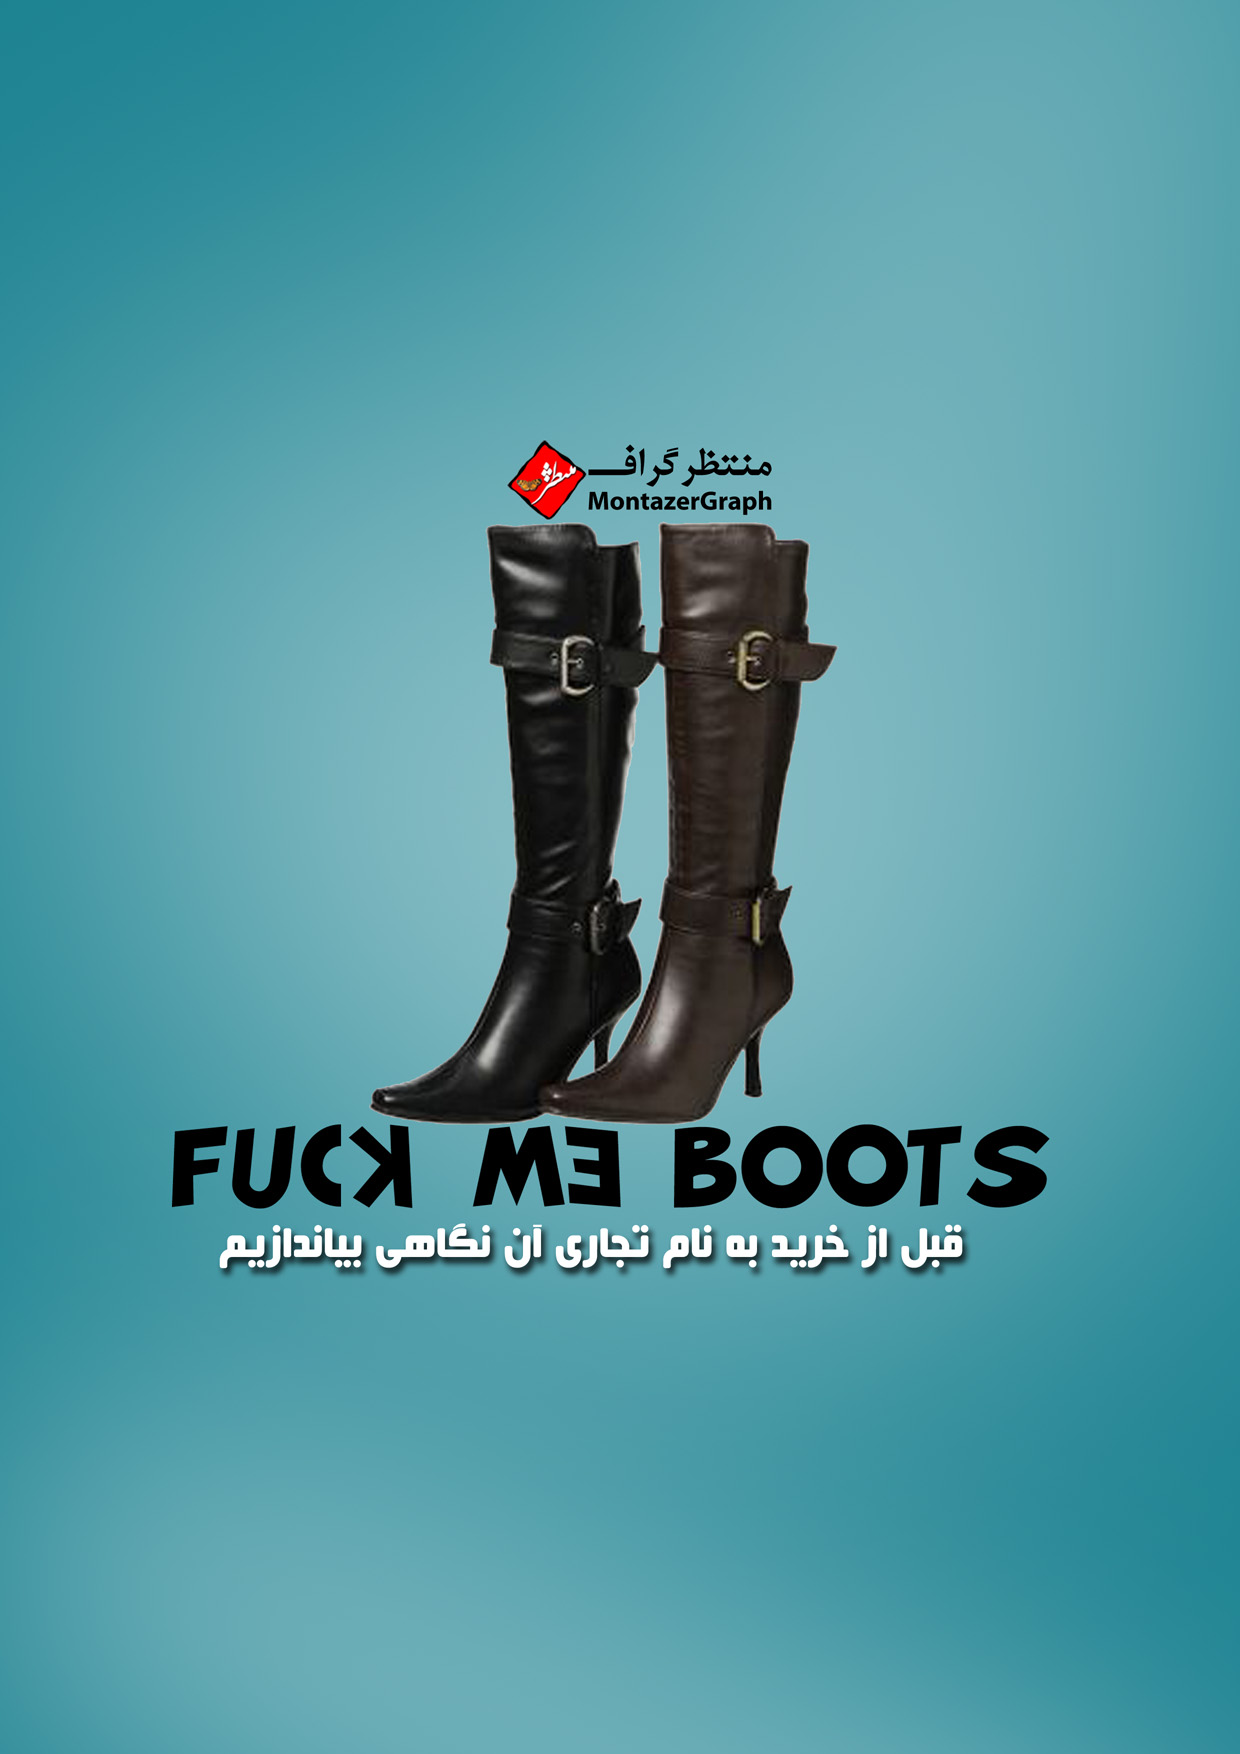 F. U. C. K. me Boots